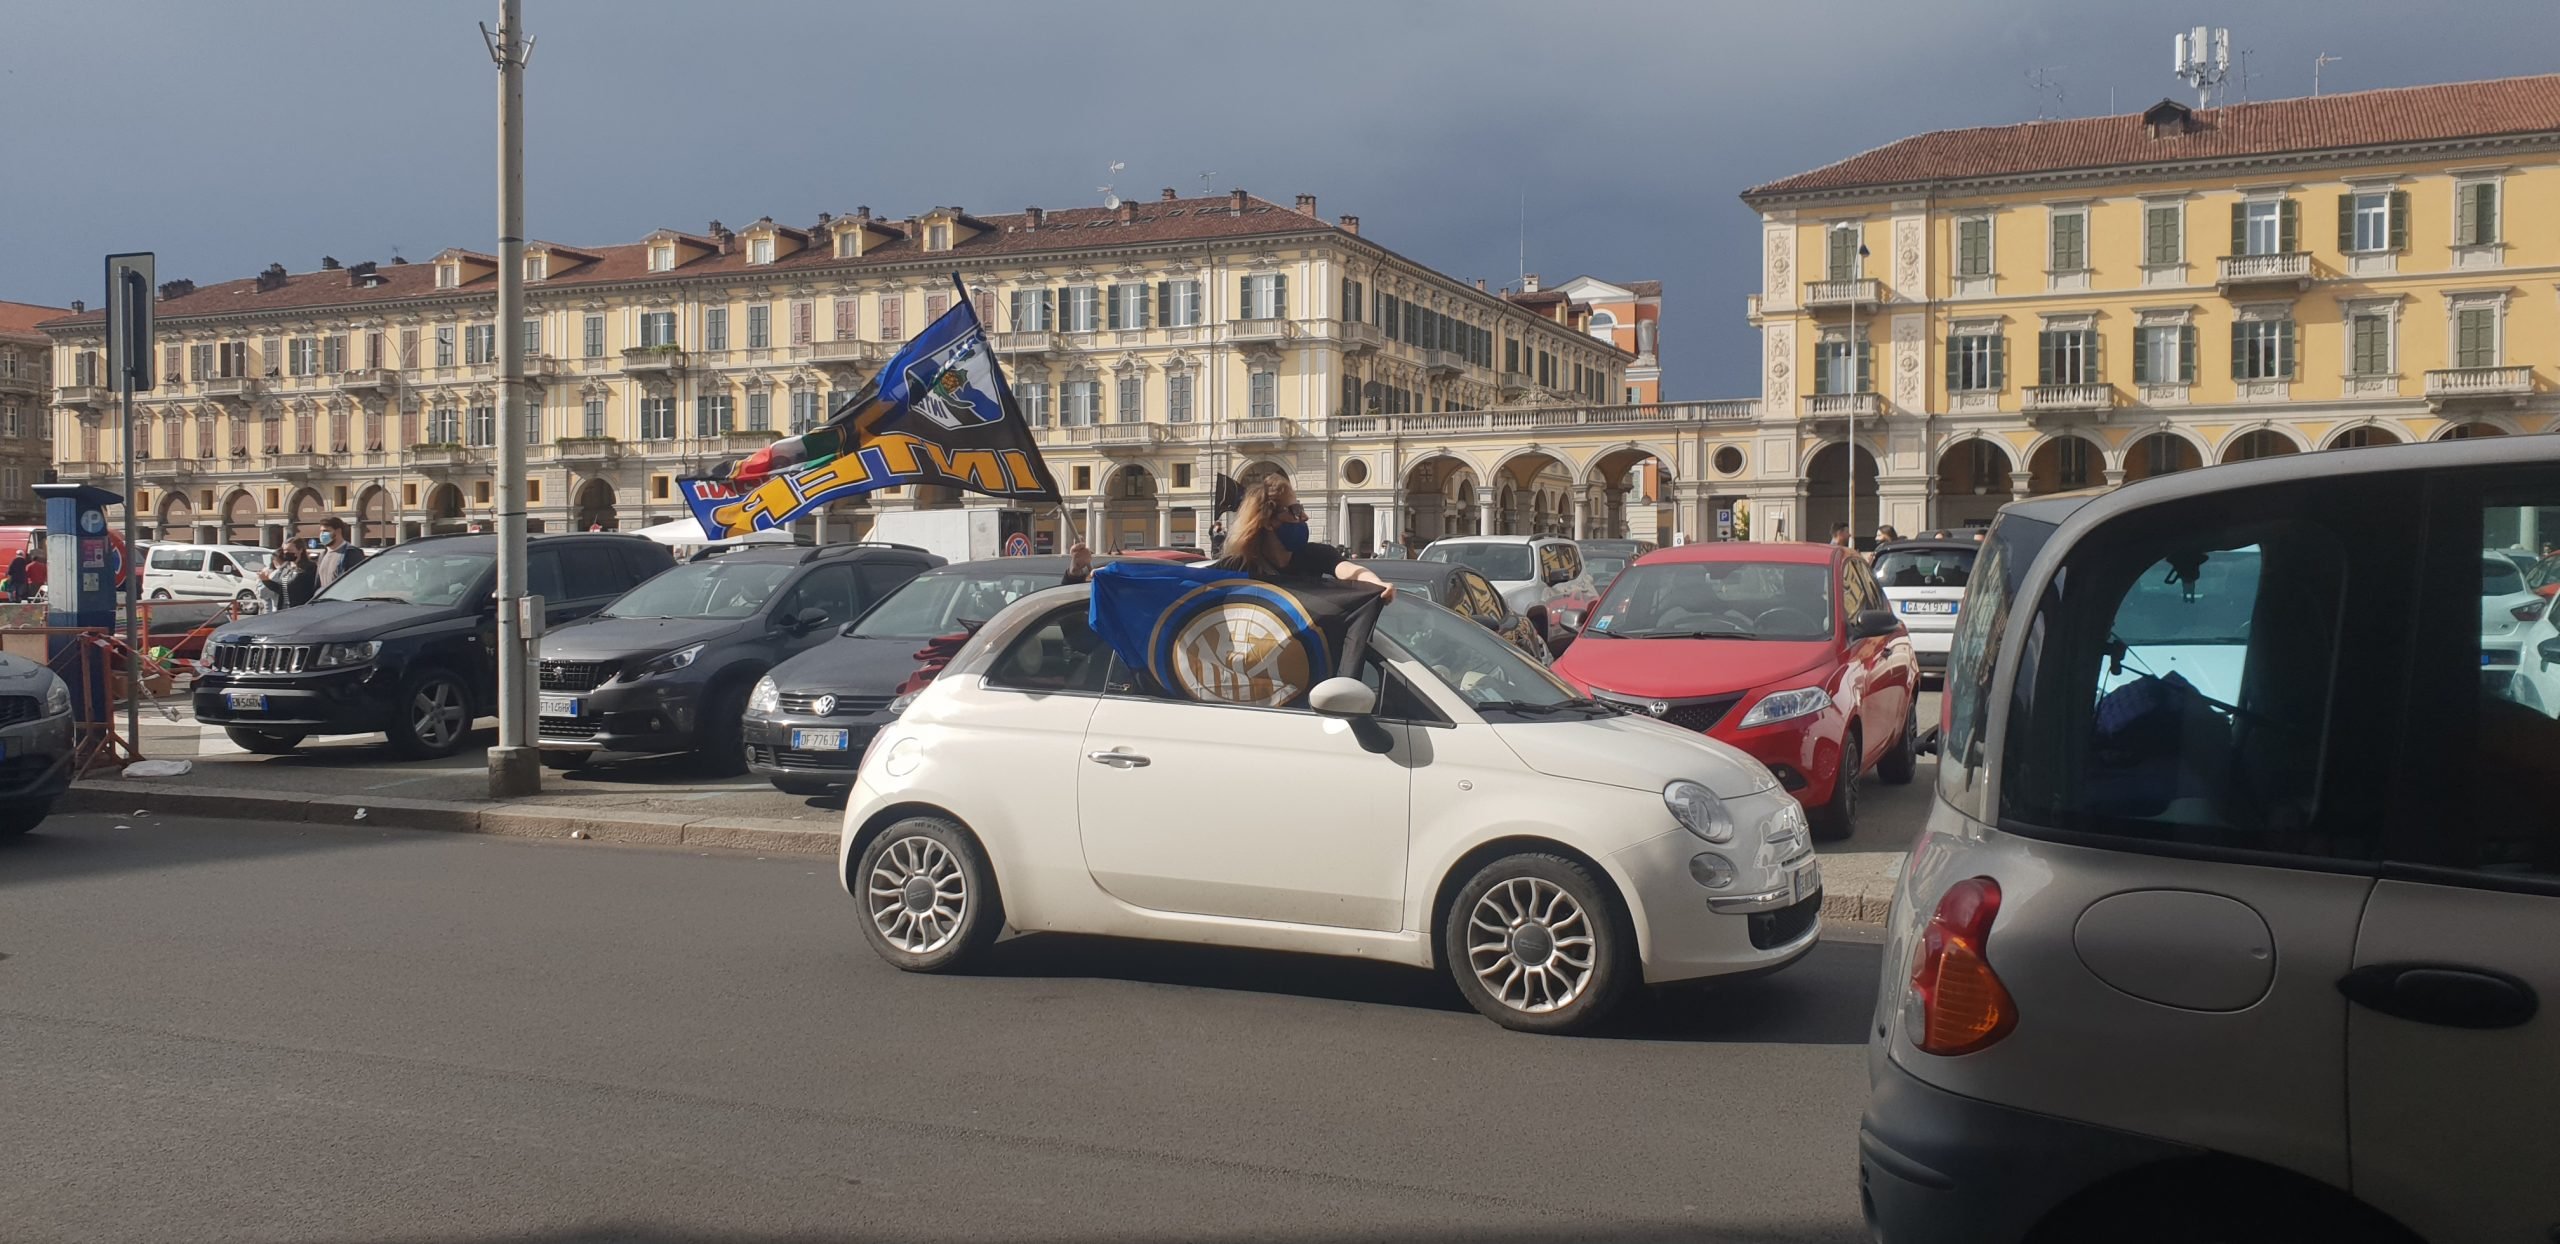 Il 19esimo scudetto dell’Inter porta il carosello in piazza Garibaldi